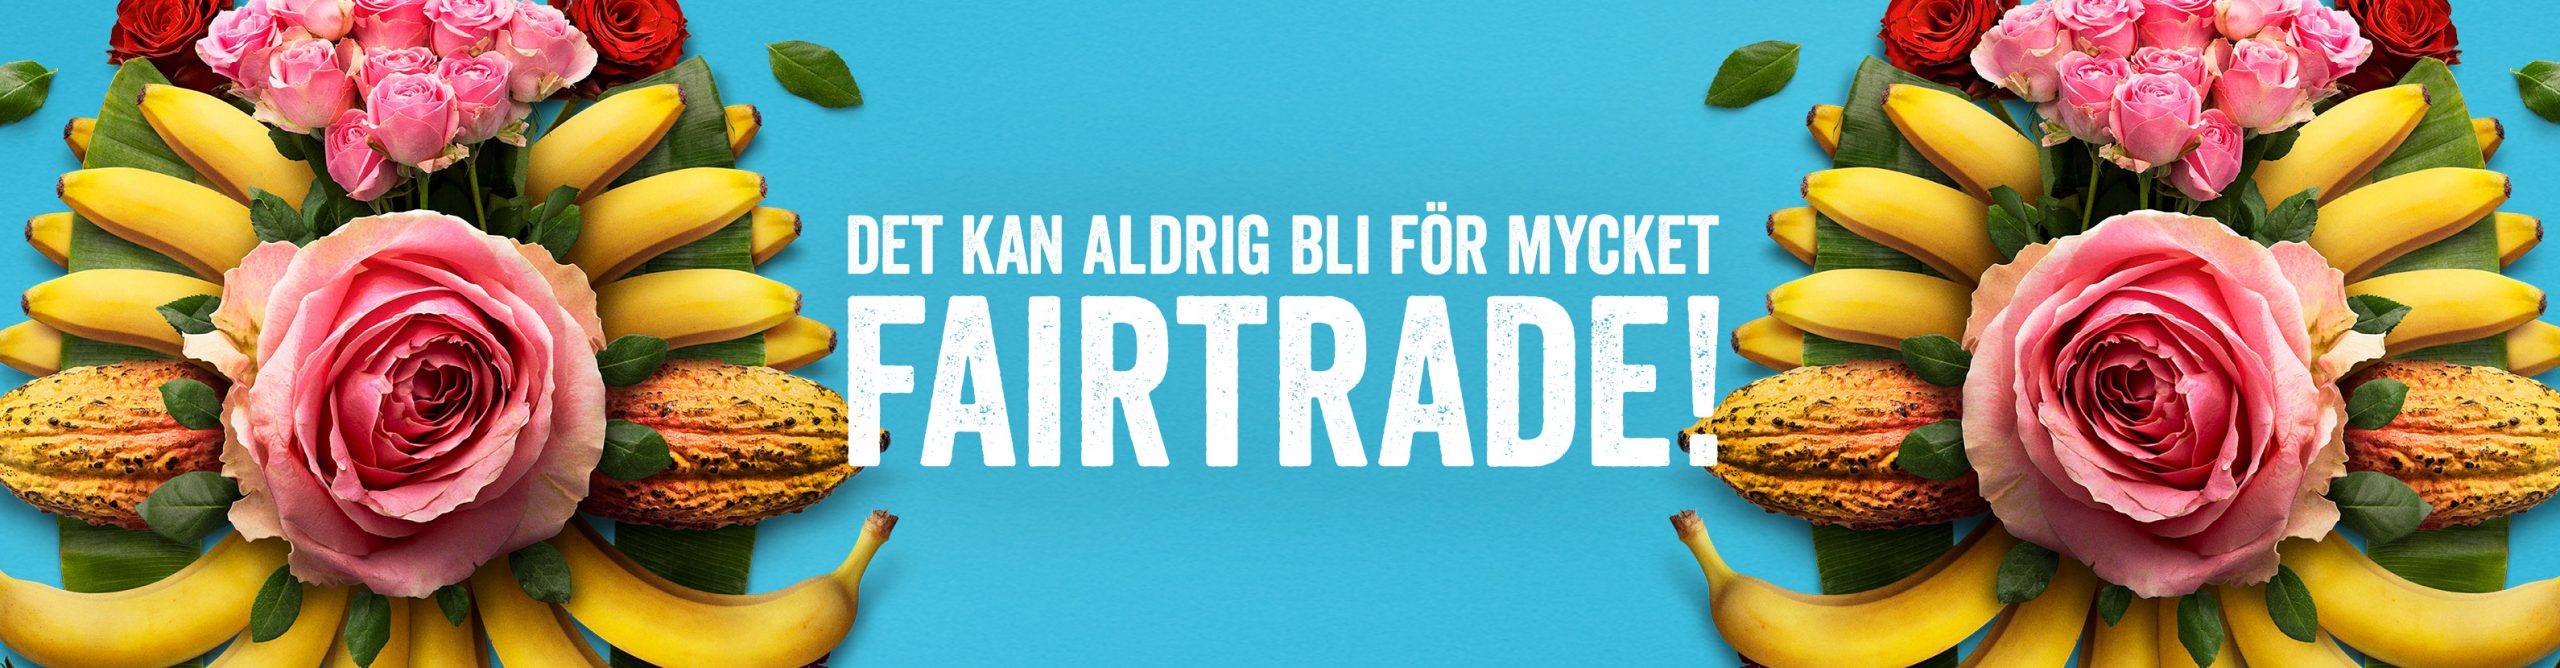 Fairtrades höstkampanj